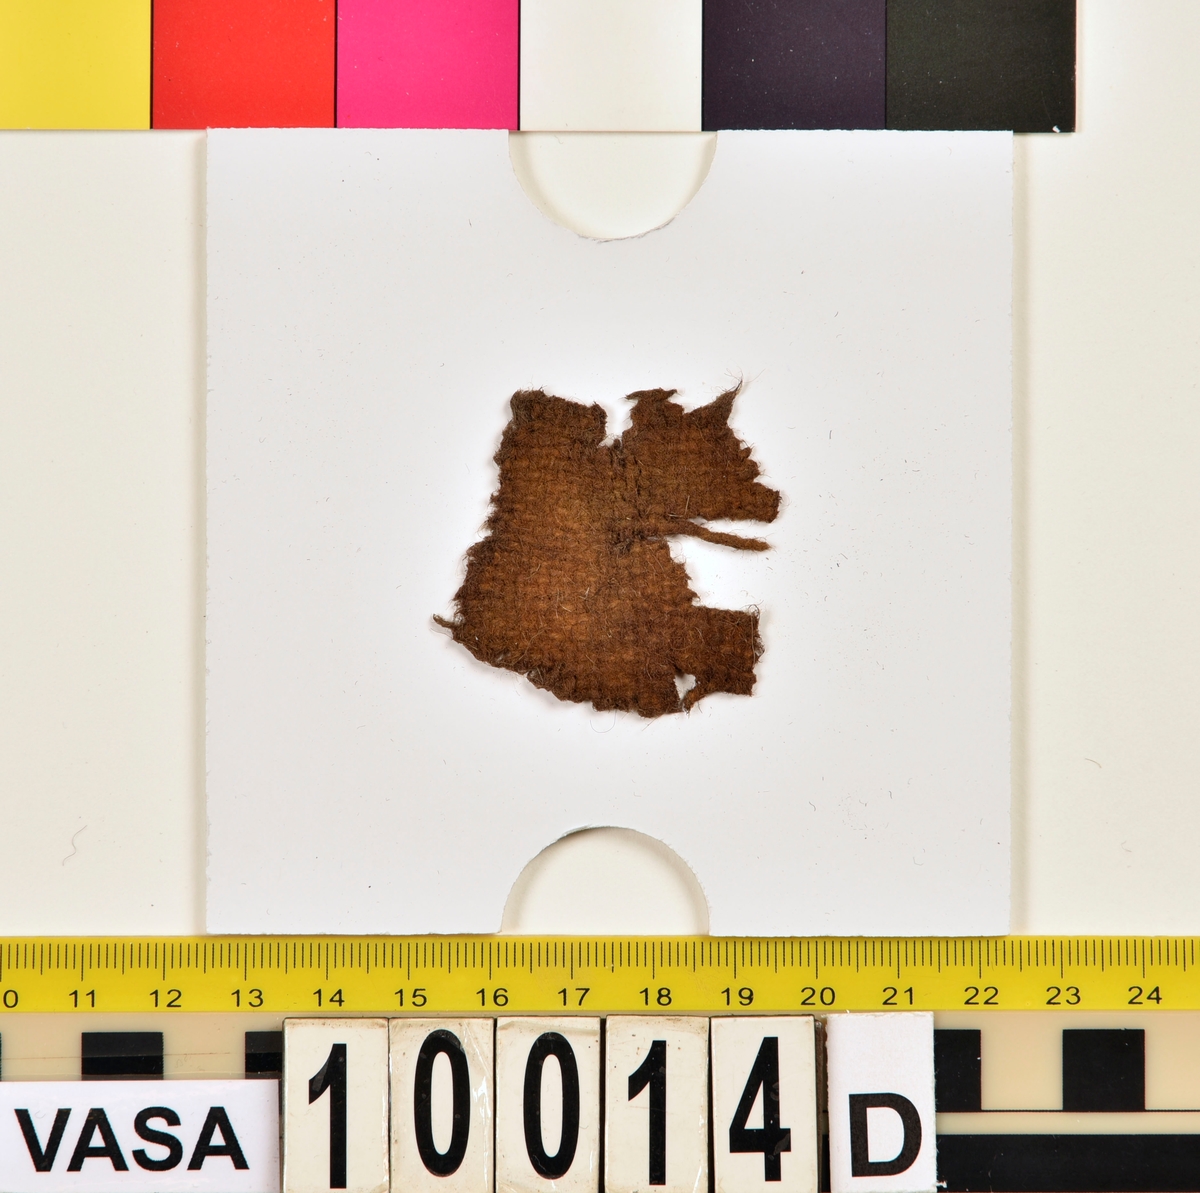 Textil.
6 textilfragment uppdelade på fyndnummer 10014a-d.
Fnr 10014a består av två fragment av ull vävd i 2/2-kypert.
Fnr 10014b består av ett fragment av ull vävd i 2/1-kypert.
Fnr 10014c består av två fragment av ull (eller bäver?) vävd i tuskaft. 
Fnr 10014d består av ett fragment av ull vävd i tuskaft.